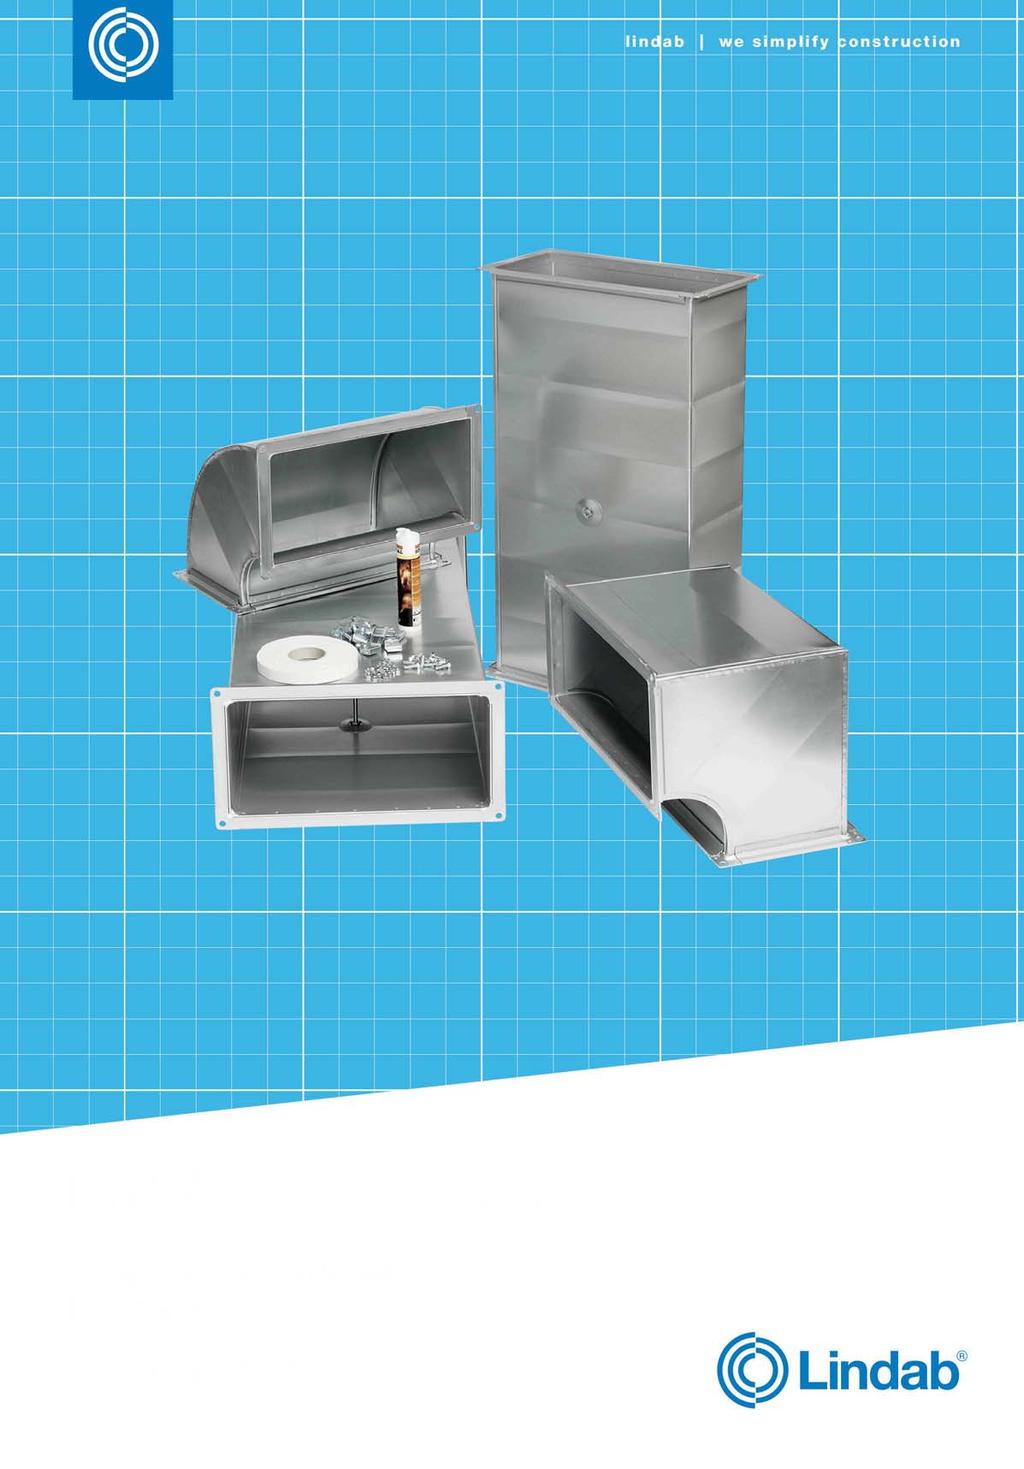 Systém Lindab - zařízení k odvodu tepla a kouře